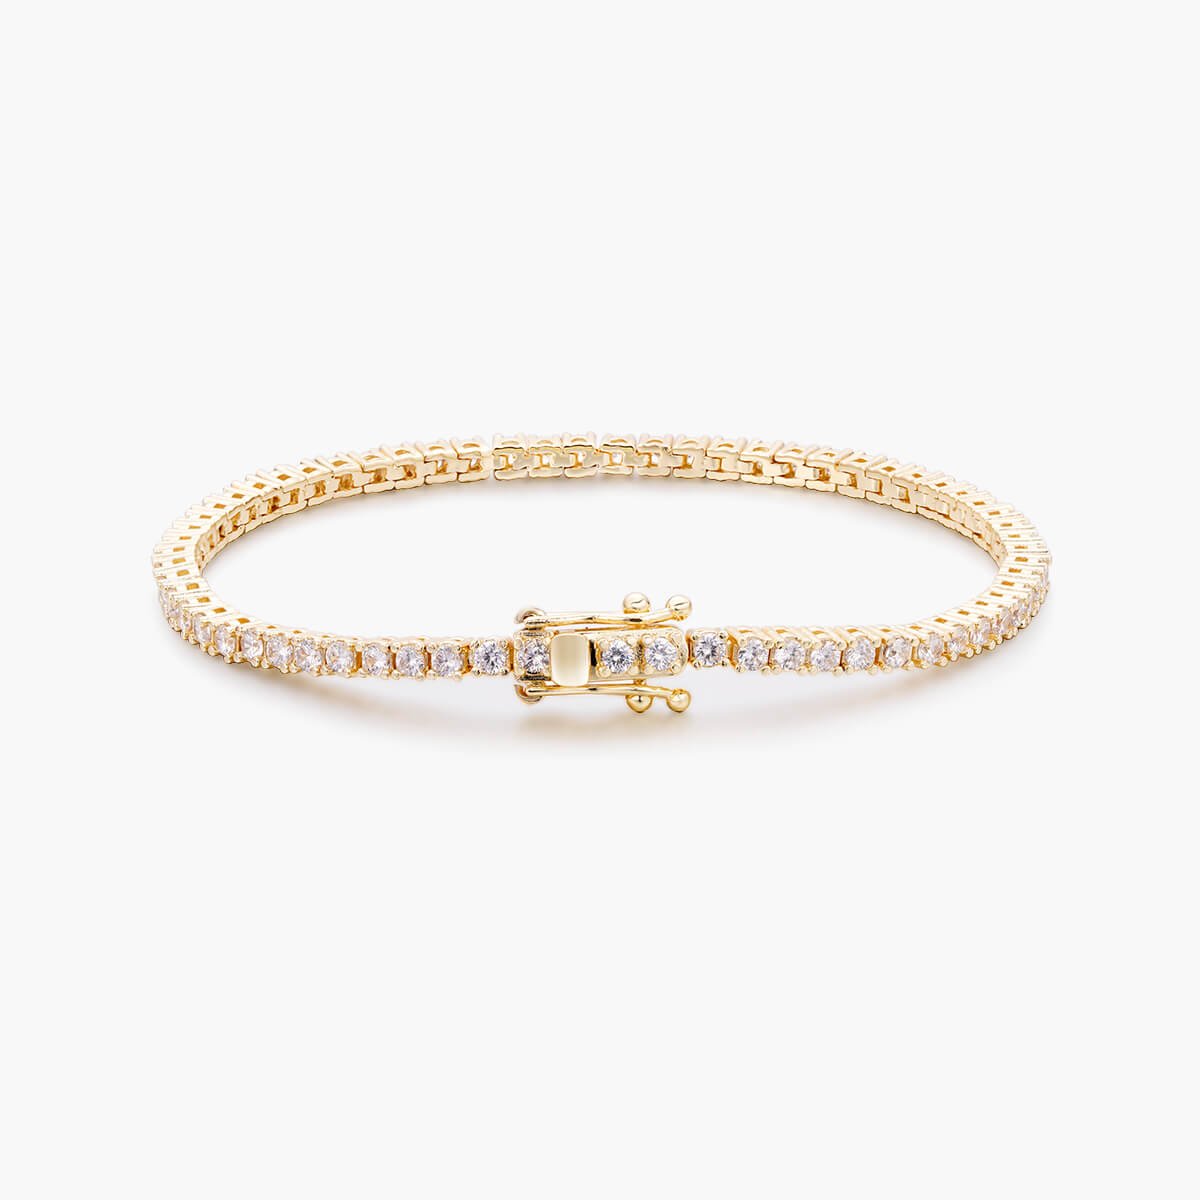 10K Solid Gold 2mm Moissanite Tennis Bracelet - The Real Jewelry CompanyThe Real Jewelry CompanyBracelets